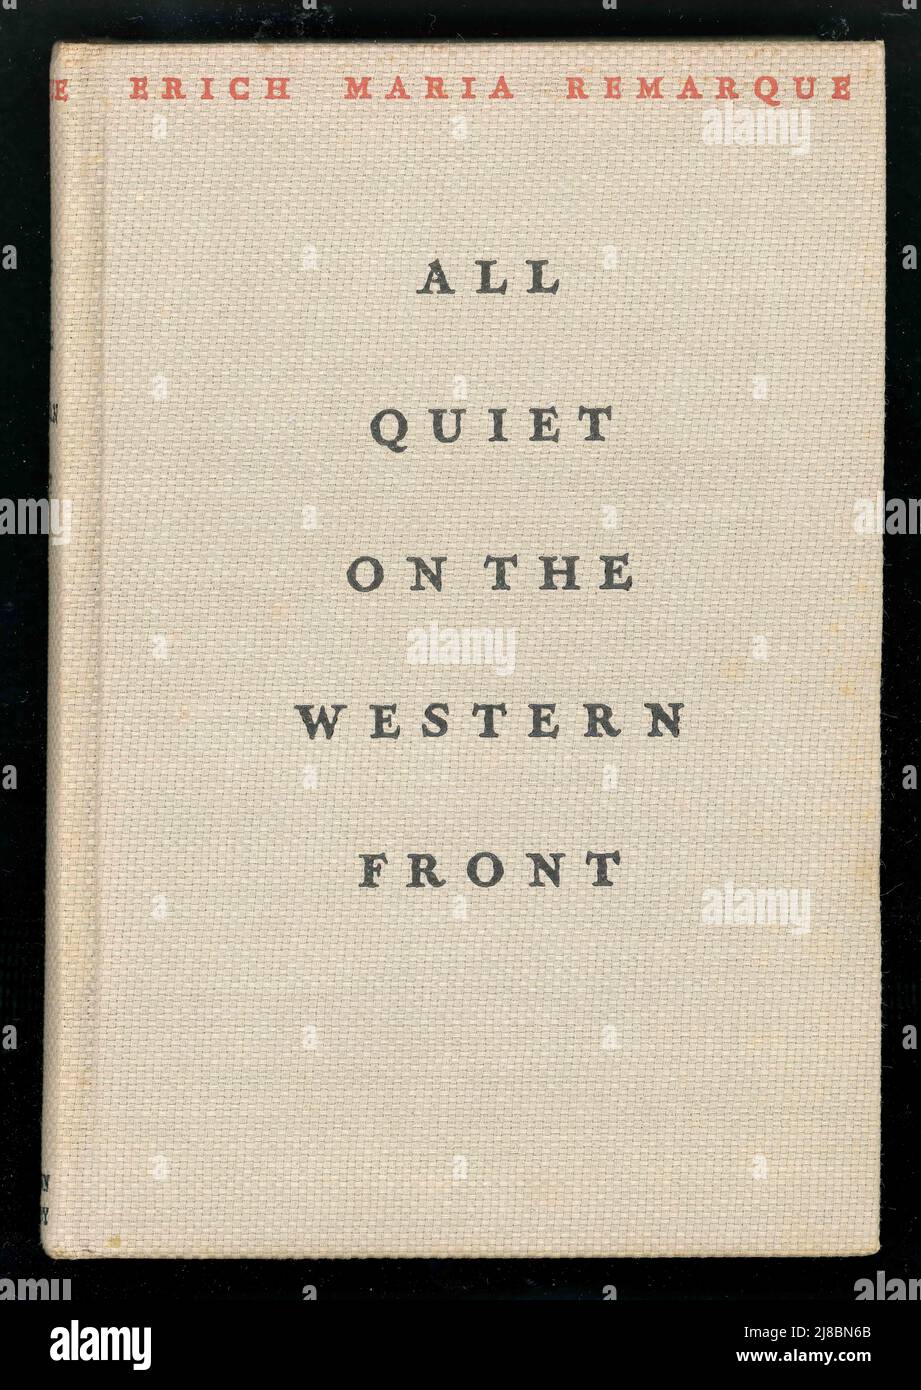 Copertina rigida del libro originale di All Quiet on the Western Front di Eric Maria Remarque, con la giacca antipolvere rimossa. Questa edizione americana è stata pubblicata nel 1929. Foto Stock